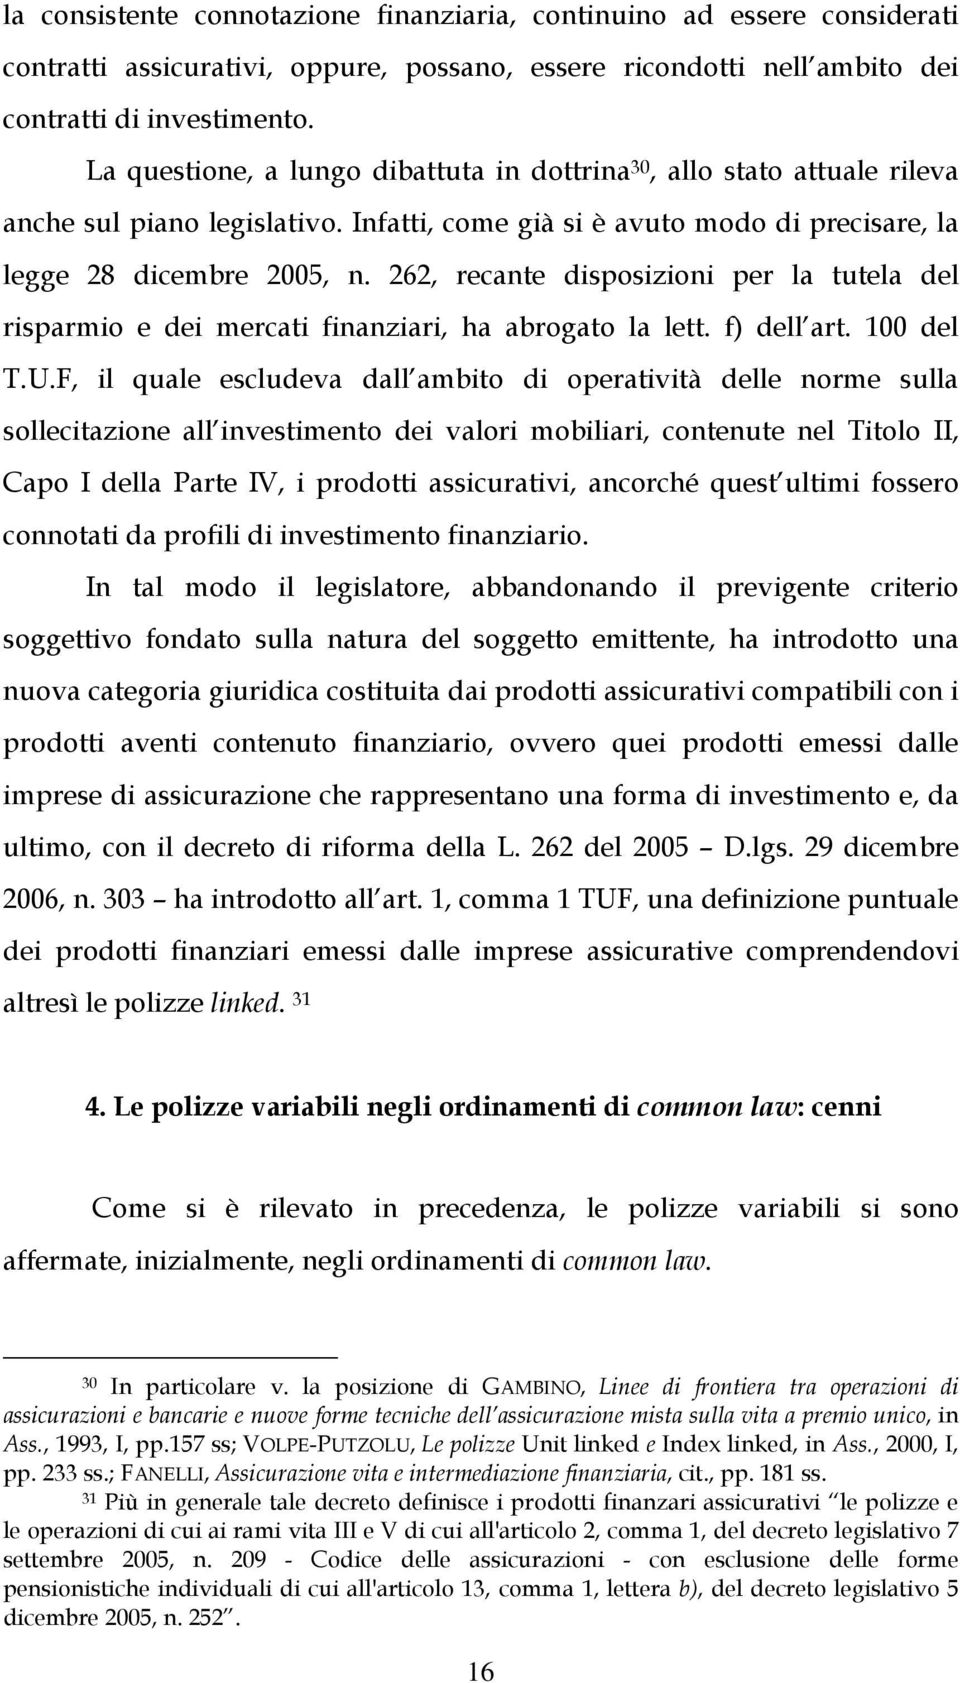 262, recante disposizioni per la tutela del risparmio e dei mercati finanziari, ha abrogato la lett. f) dell art. 100 del T.U.